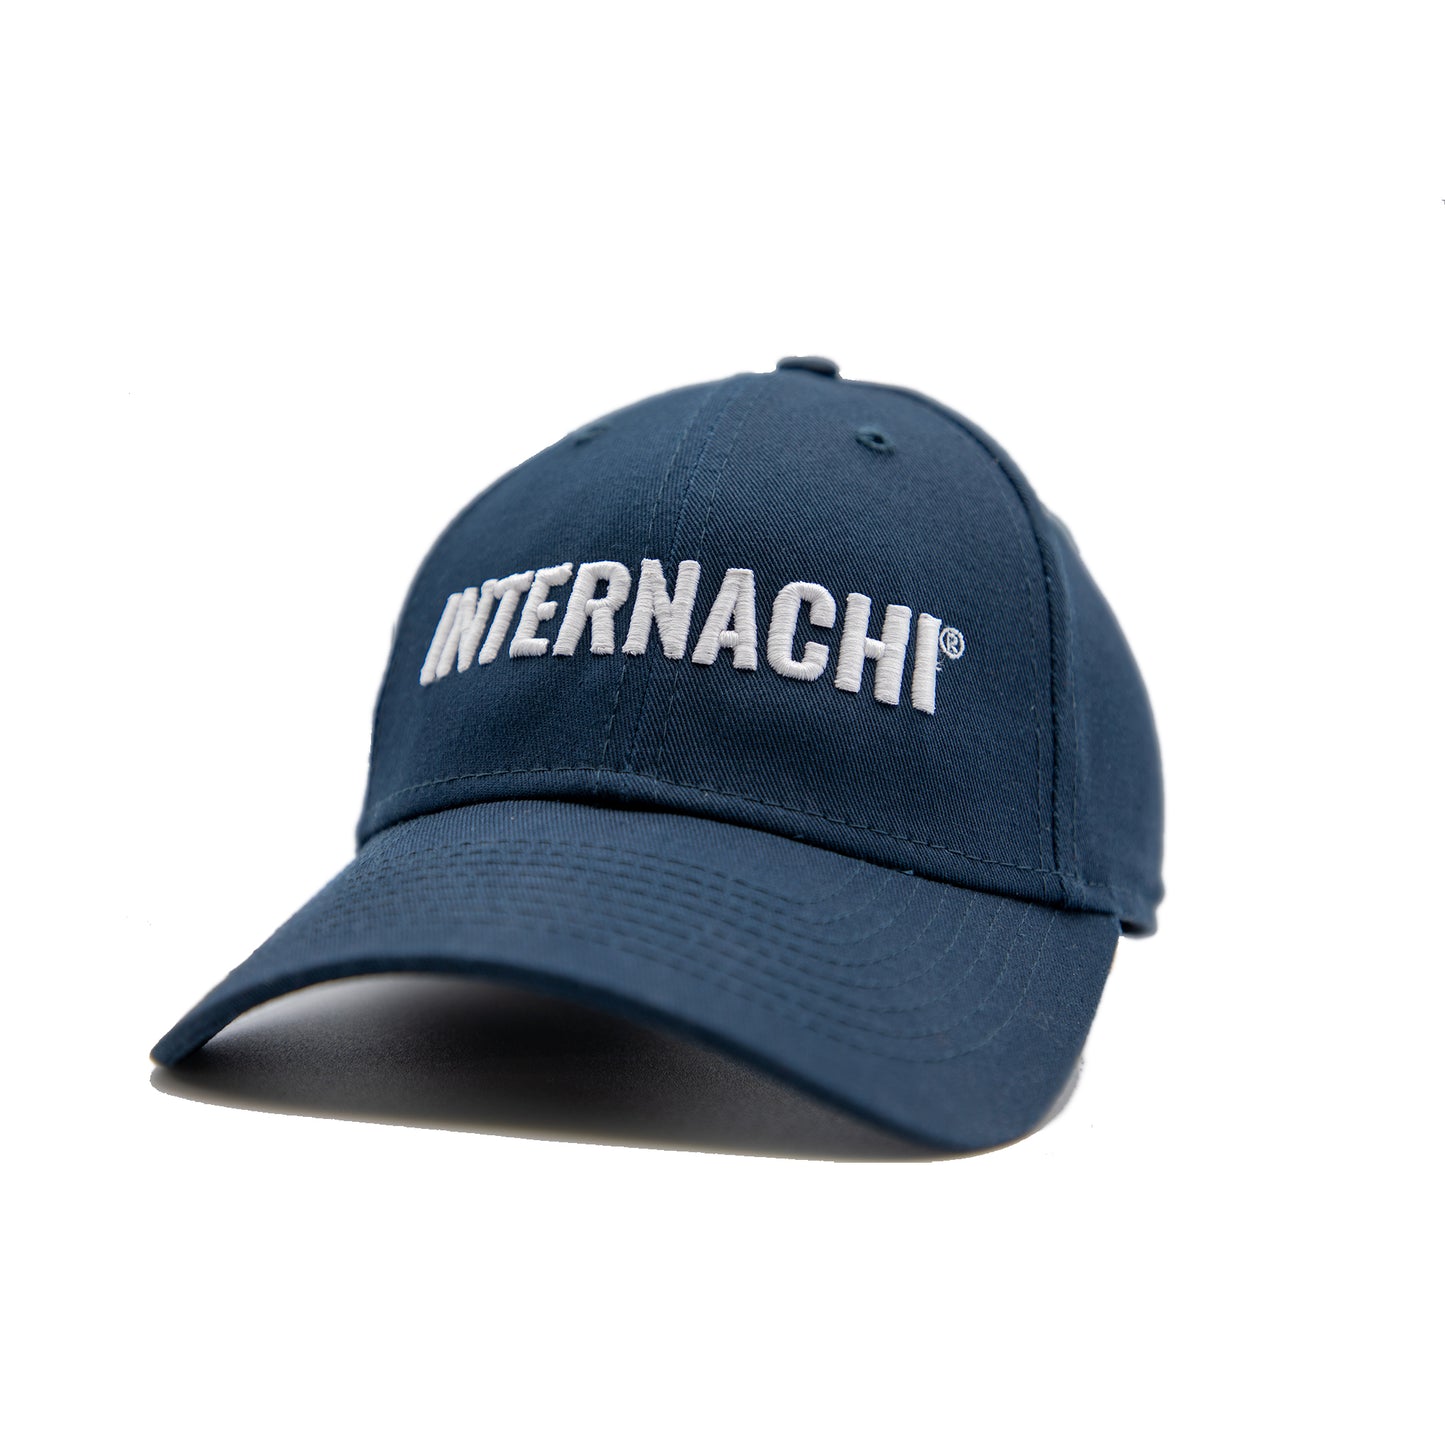 InterNACHI® Cap